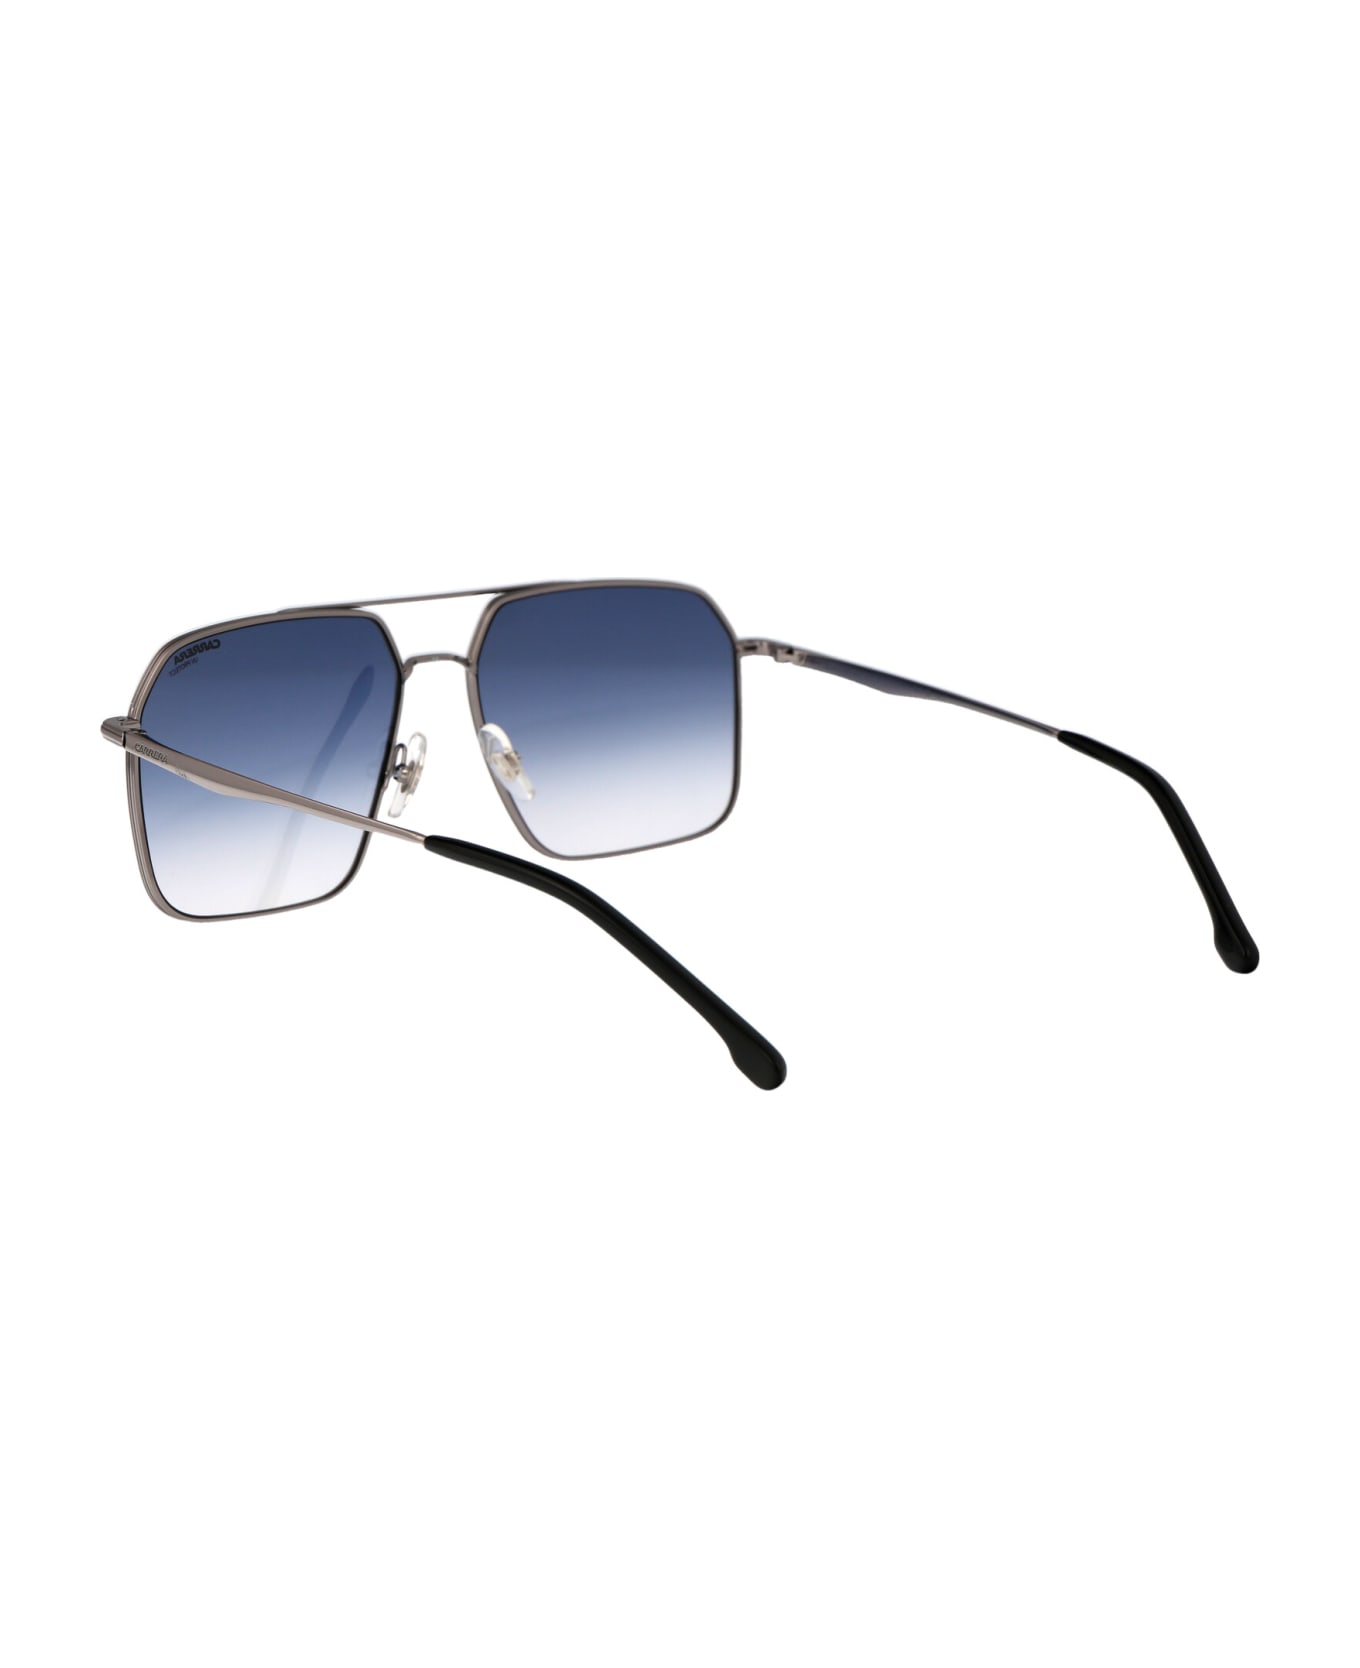 Carrera 333/s Sunglasses - 6LB08 RUTHENIUM サングラス